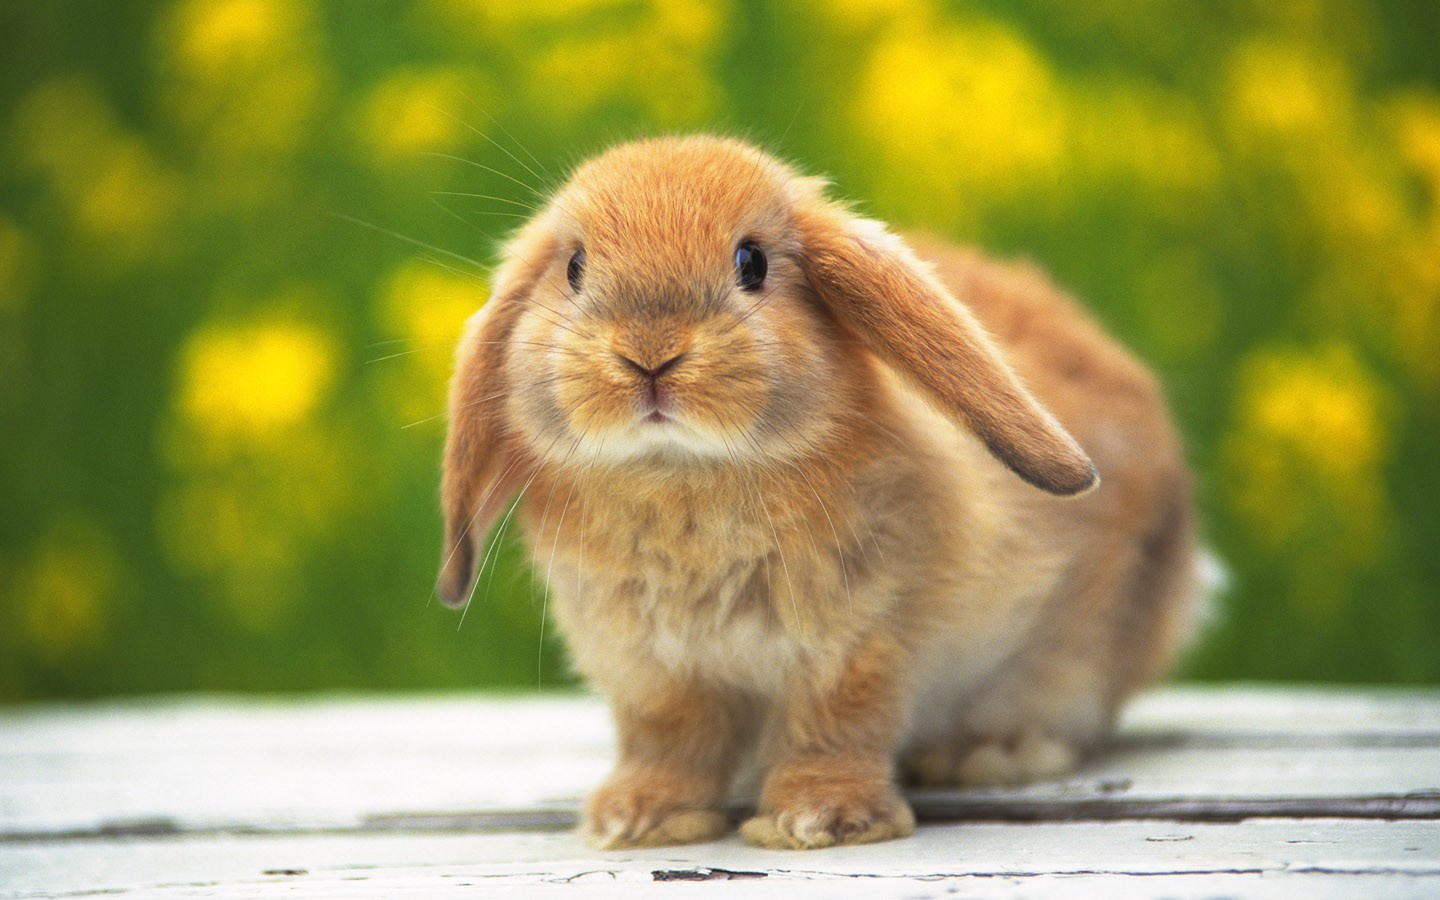 Cute-rabbit-1440-900-widescreen-32511.jpg